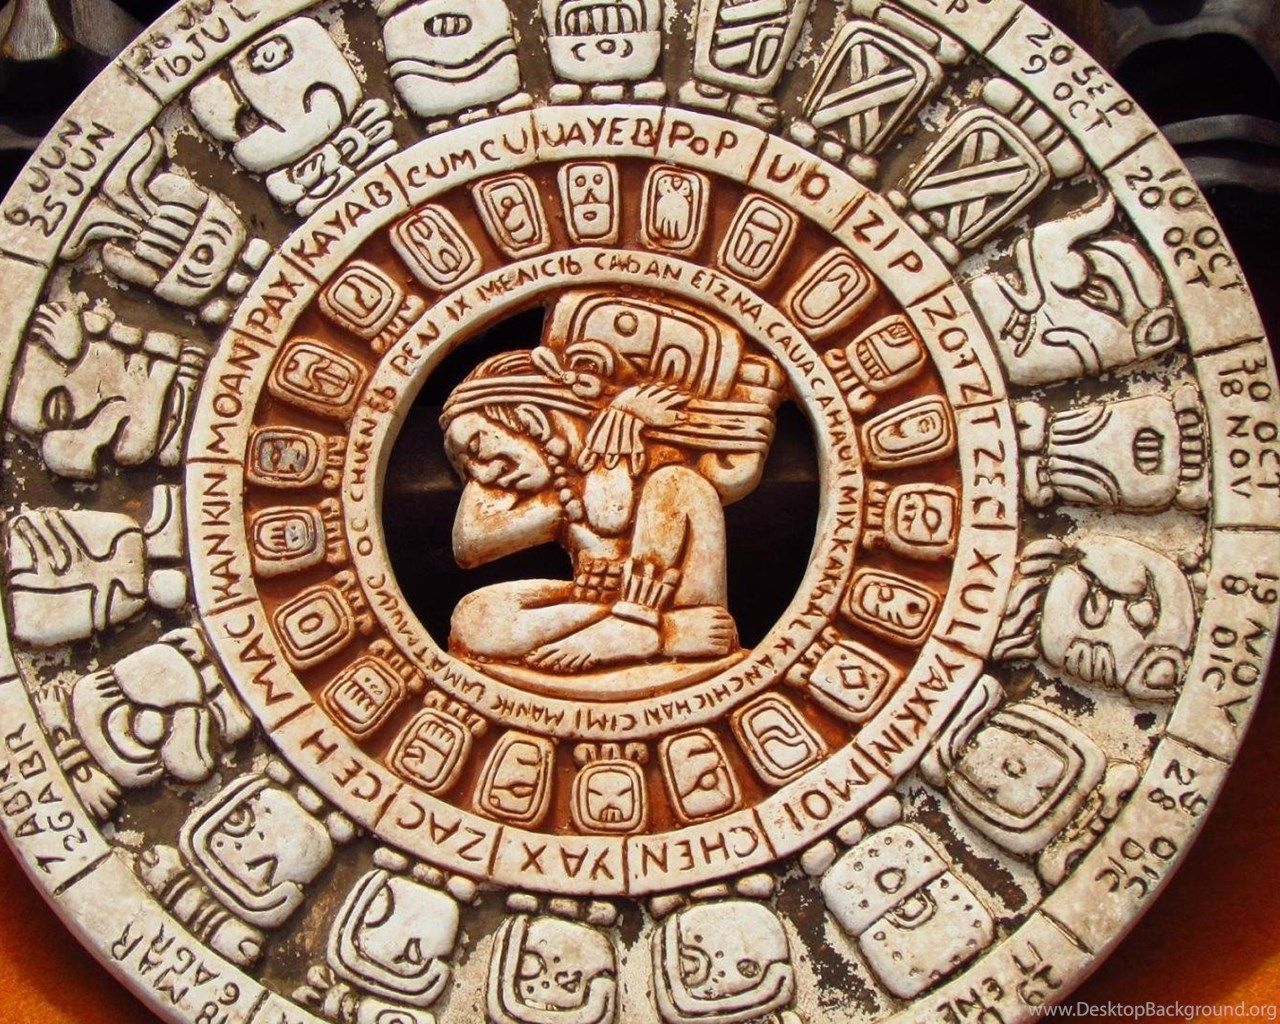 Аудиосказка календарь майя. Хааб – Солнечный календарь Майя. Календарь индейцев Майя. Индейцы Майя календарь Цолькин. Календарь ма(й)я.